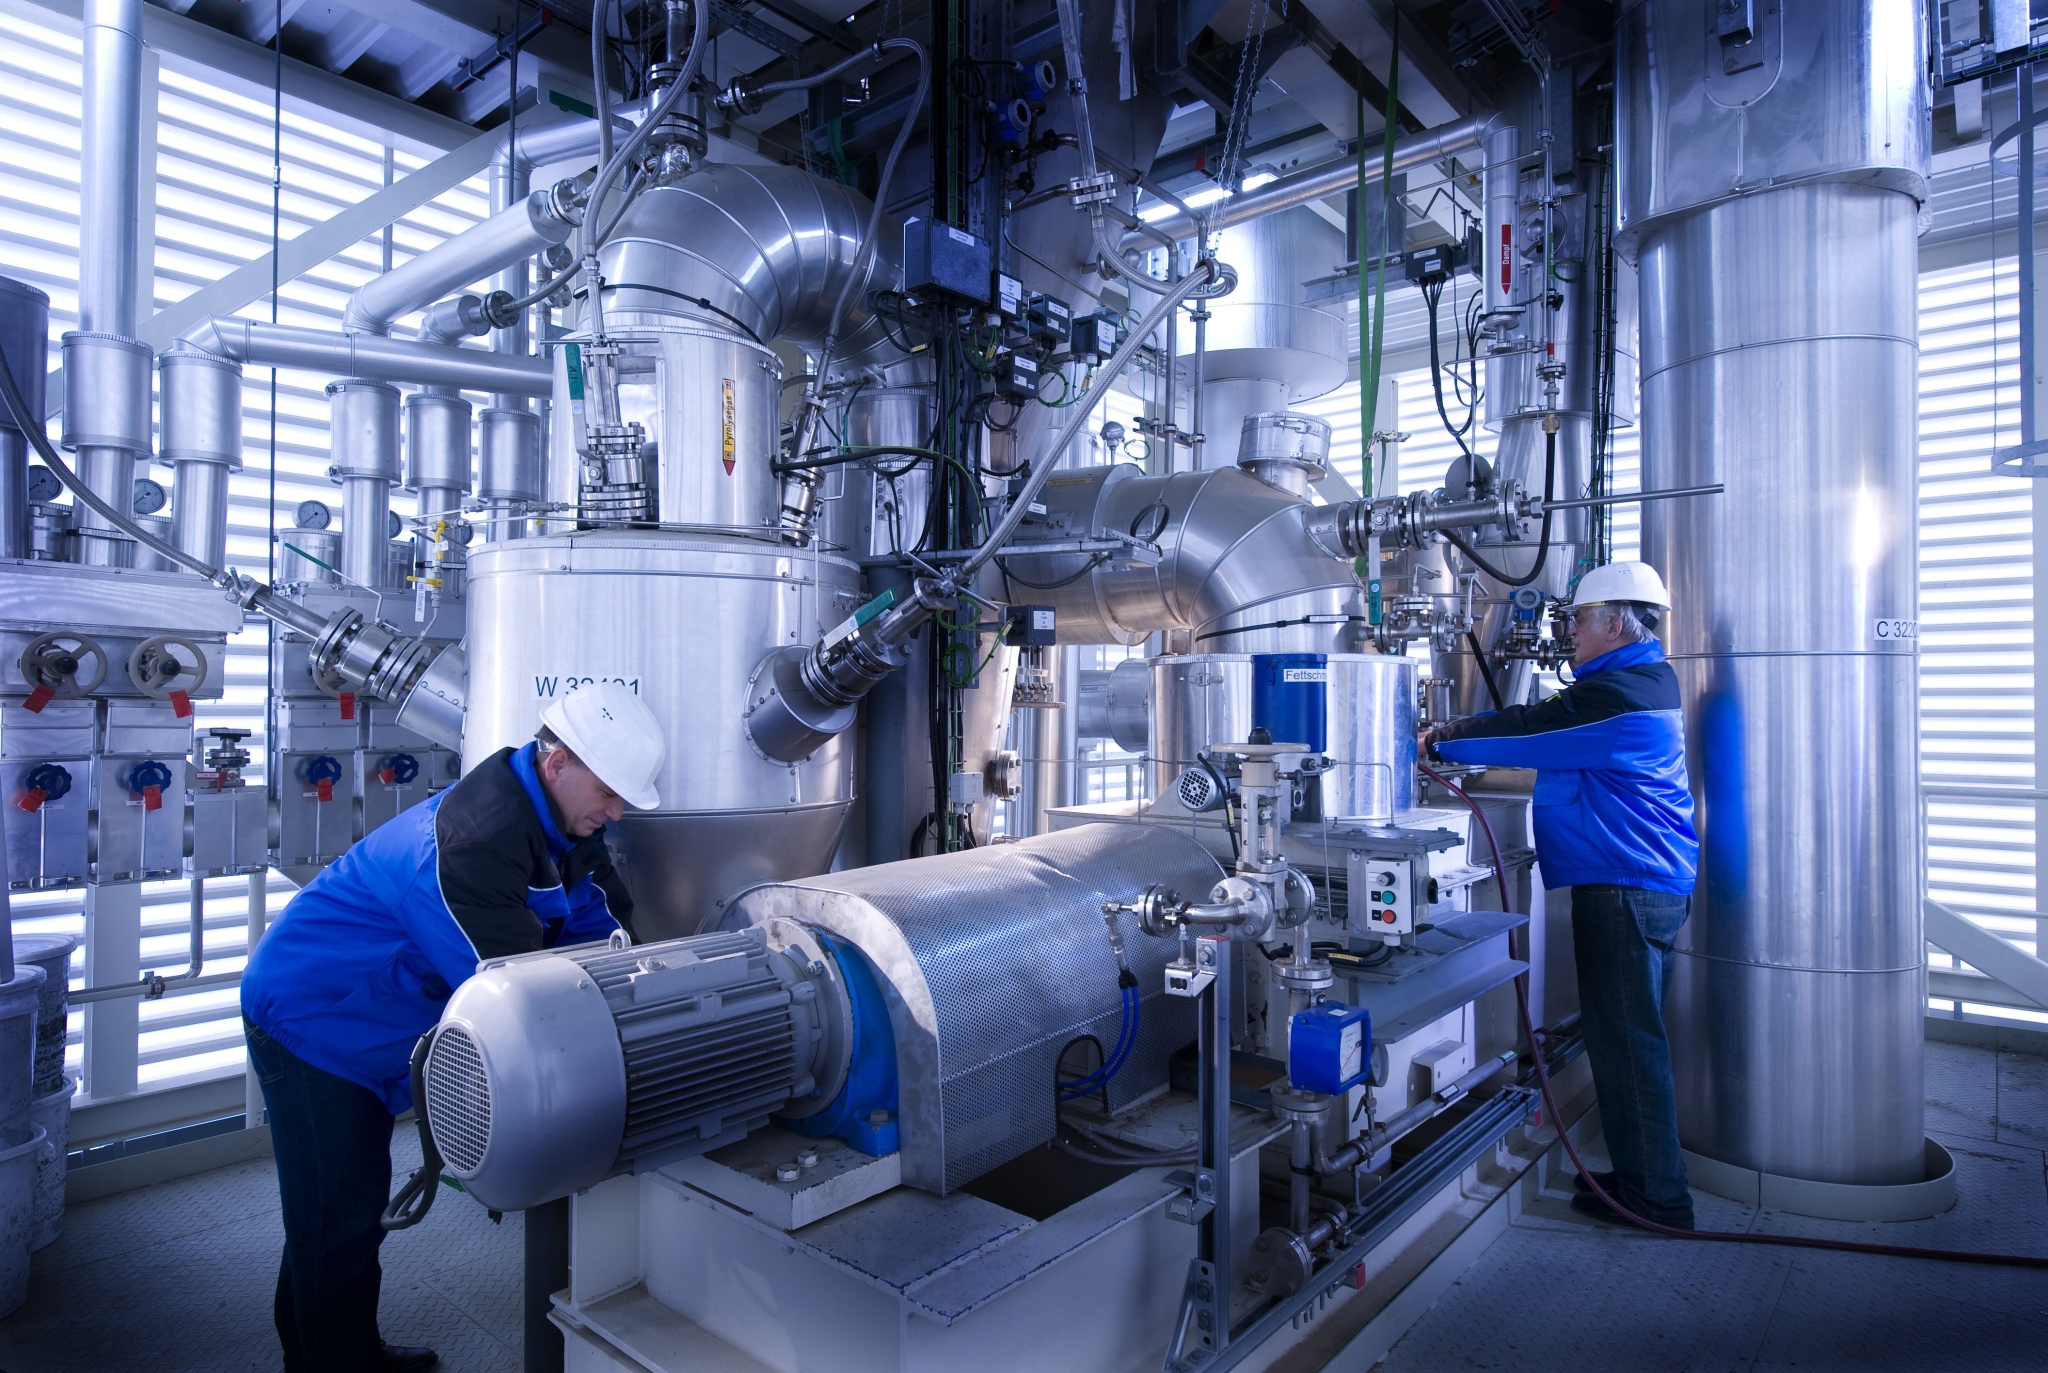 Das Bild zeigt zwei Männer in blauen Jacken, die an einem Reaktor arbeiten.